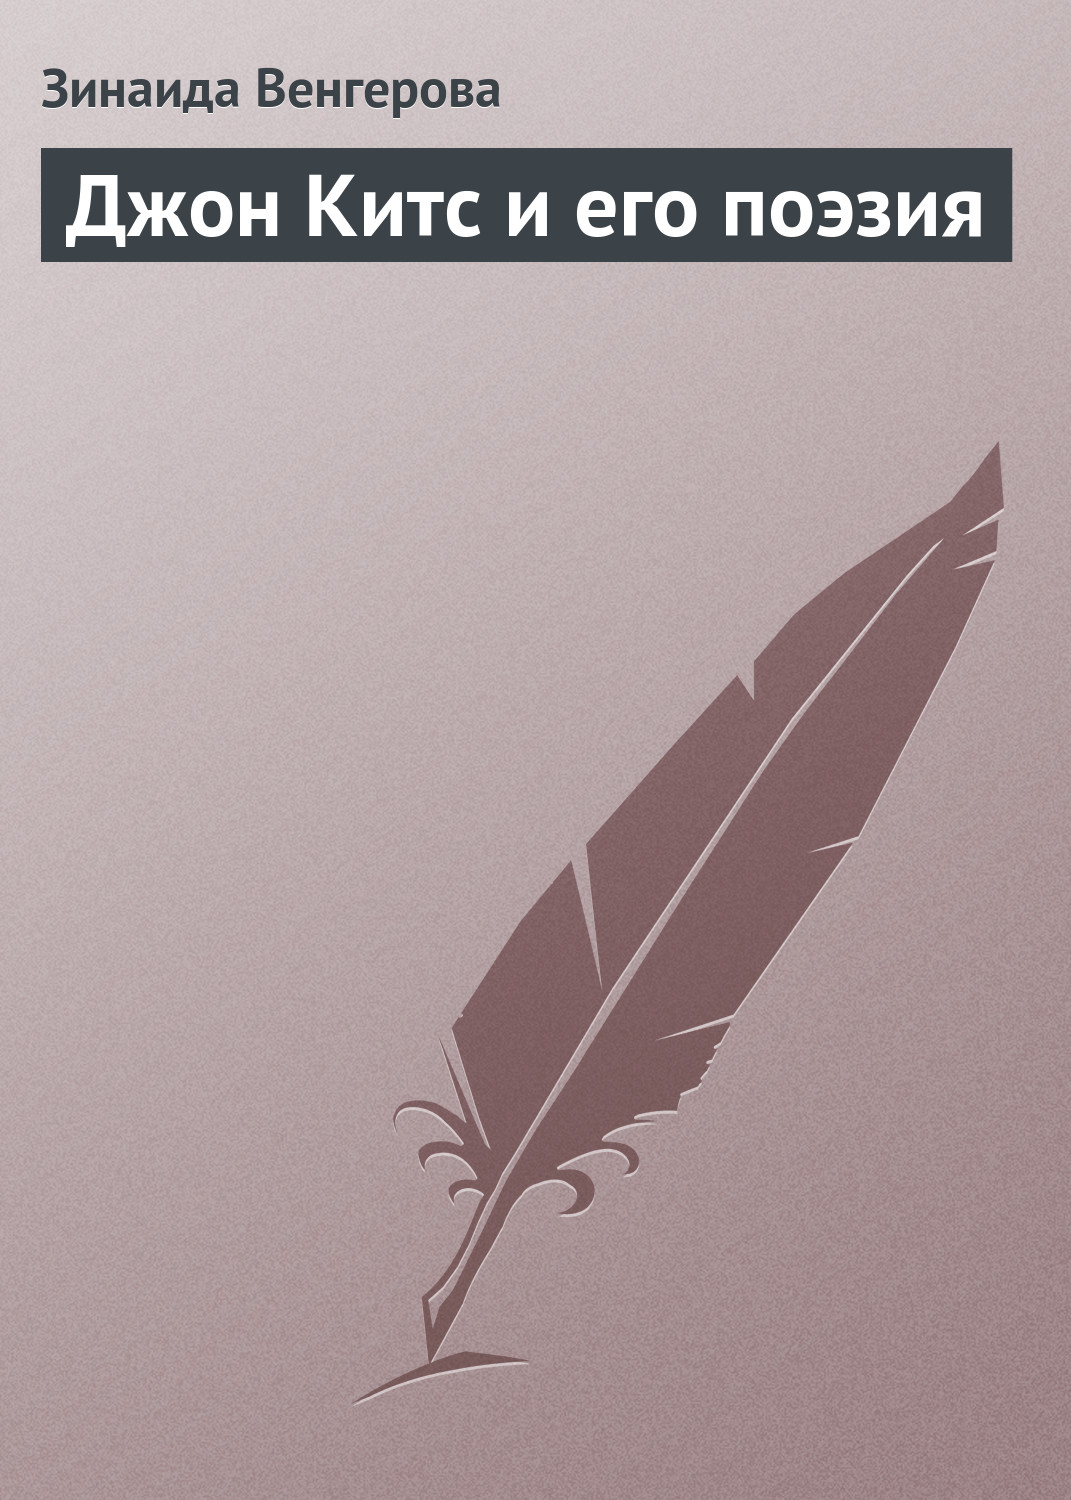 Книга Джон Китс и его поэзия из серии , созданная Зинаида Венгерова, может относится к жанру Критика. Стоимость электронной книги Джон Китс и его поэзия с идентификатором 22098265 составляет 5.99 руб.